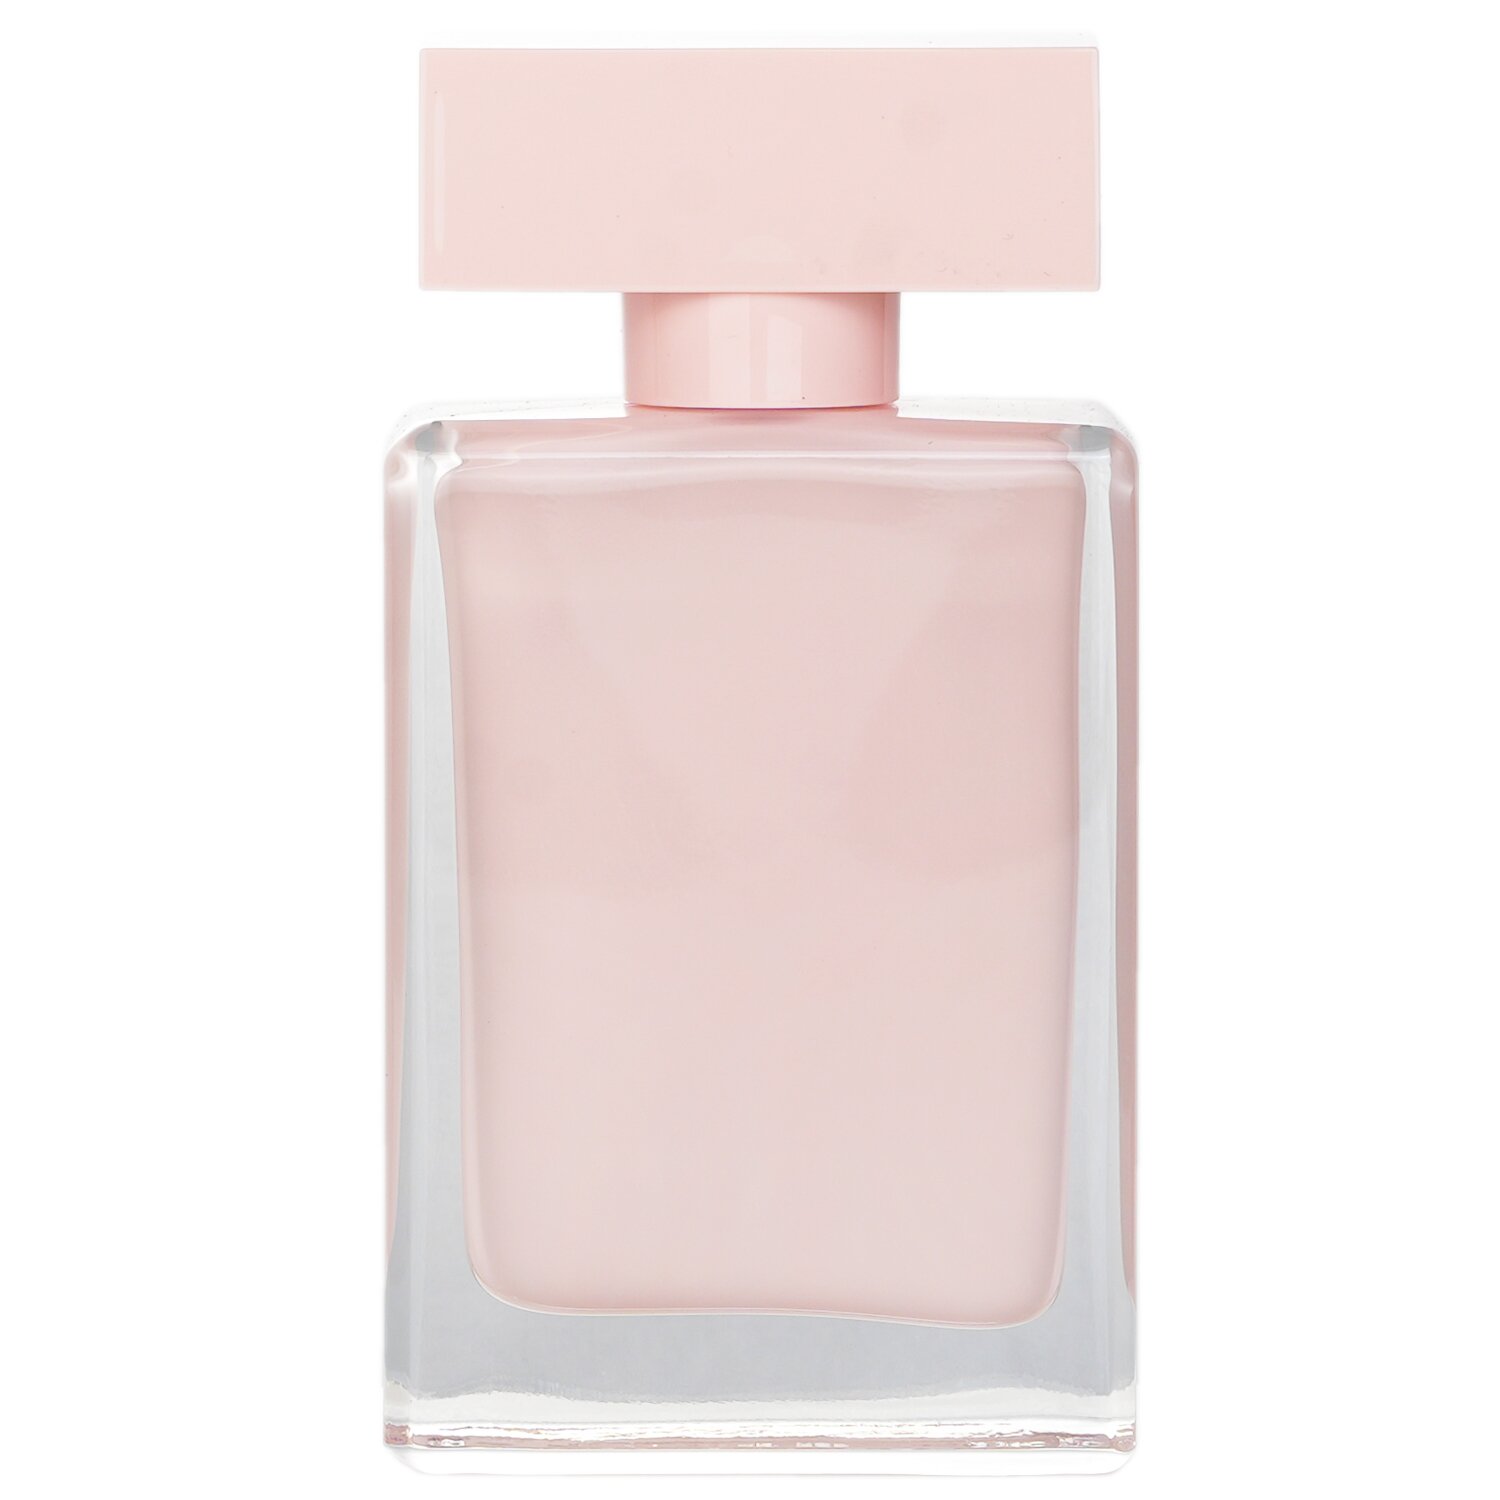 Narciso Rodriguez For Her Eau De Parfum Spray 50ml/1.7oz